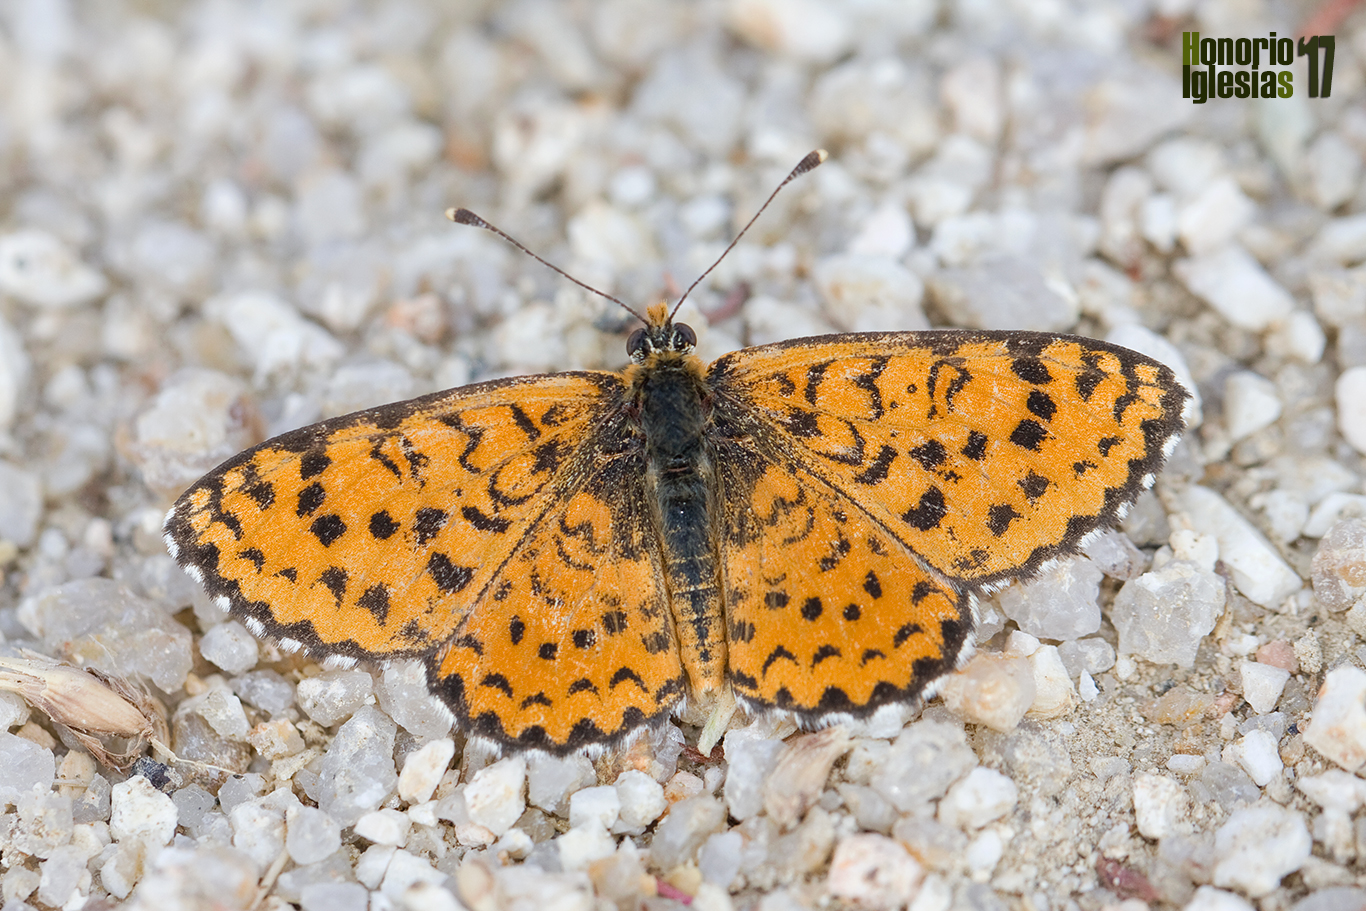 Ejemplar de mariposa docella del gordolobo (Melitaea trivia) mostrando su anverso alar